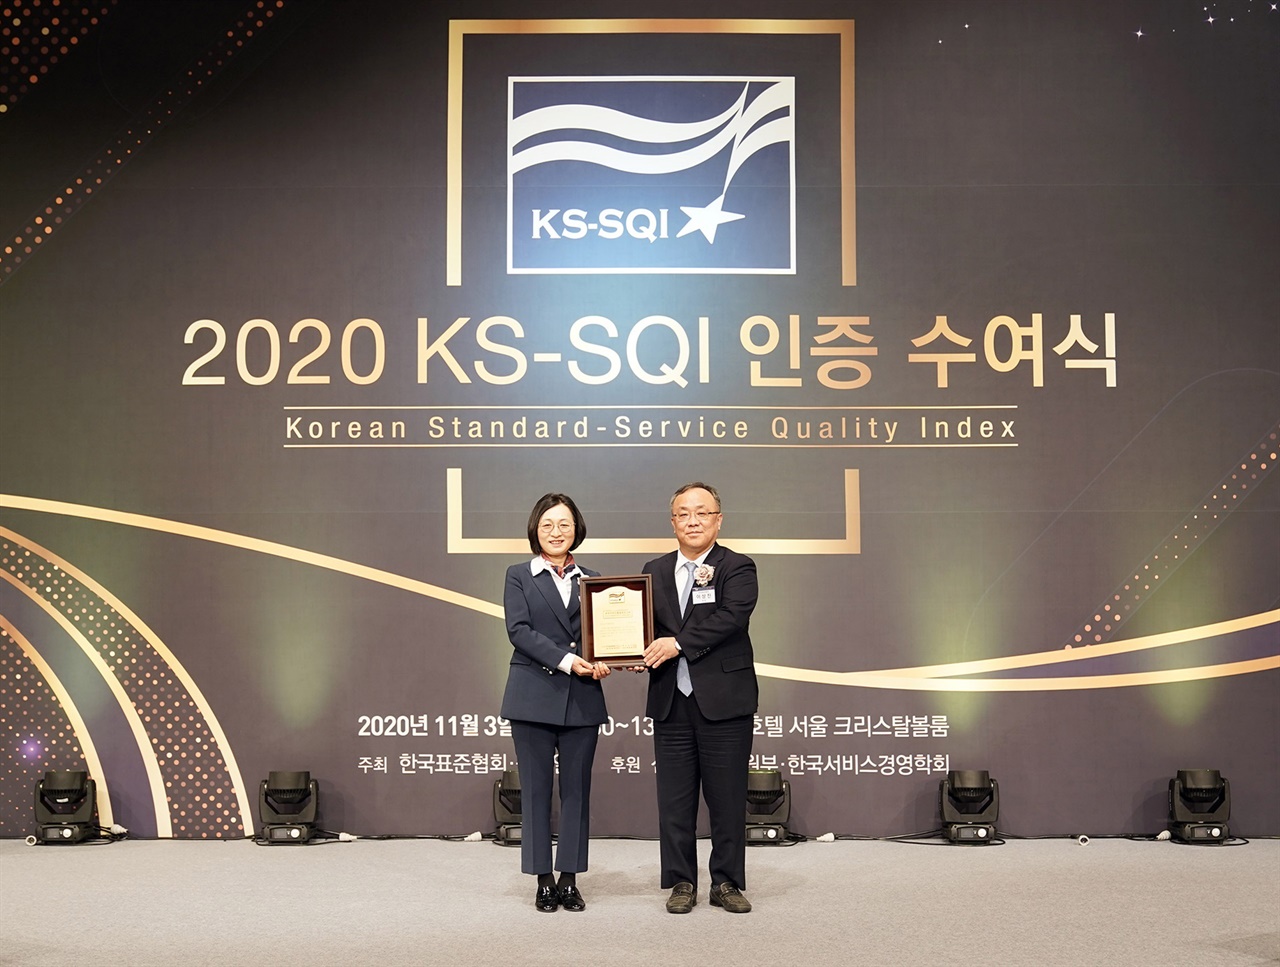  
경기 성남시가 한국표준협회 올해 KS-SQI(Korean Standard-Service Quality Index, 한국서비스품질지수)’ 공공서비스 경기도 지자체 부문에서 2년 연속 1위를 기록했다.
